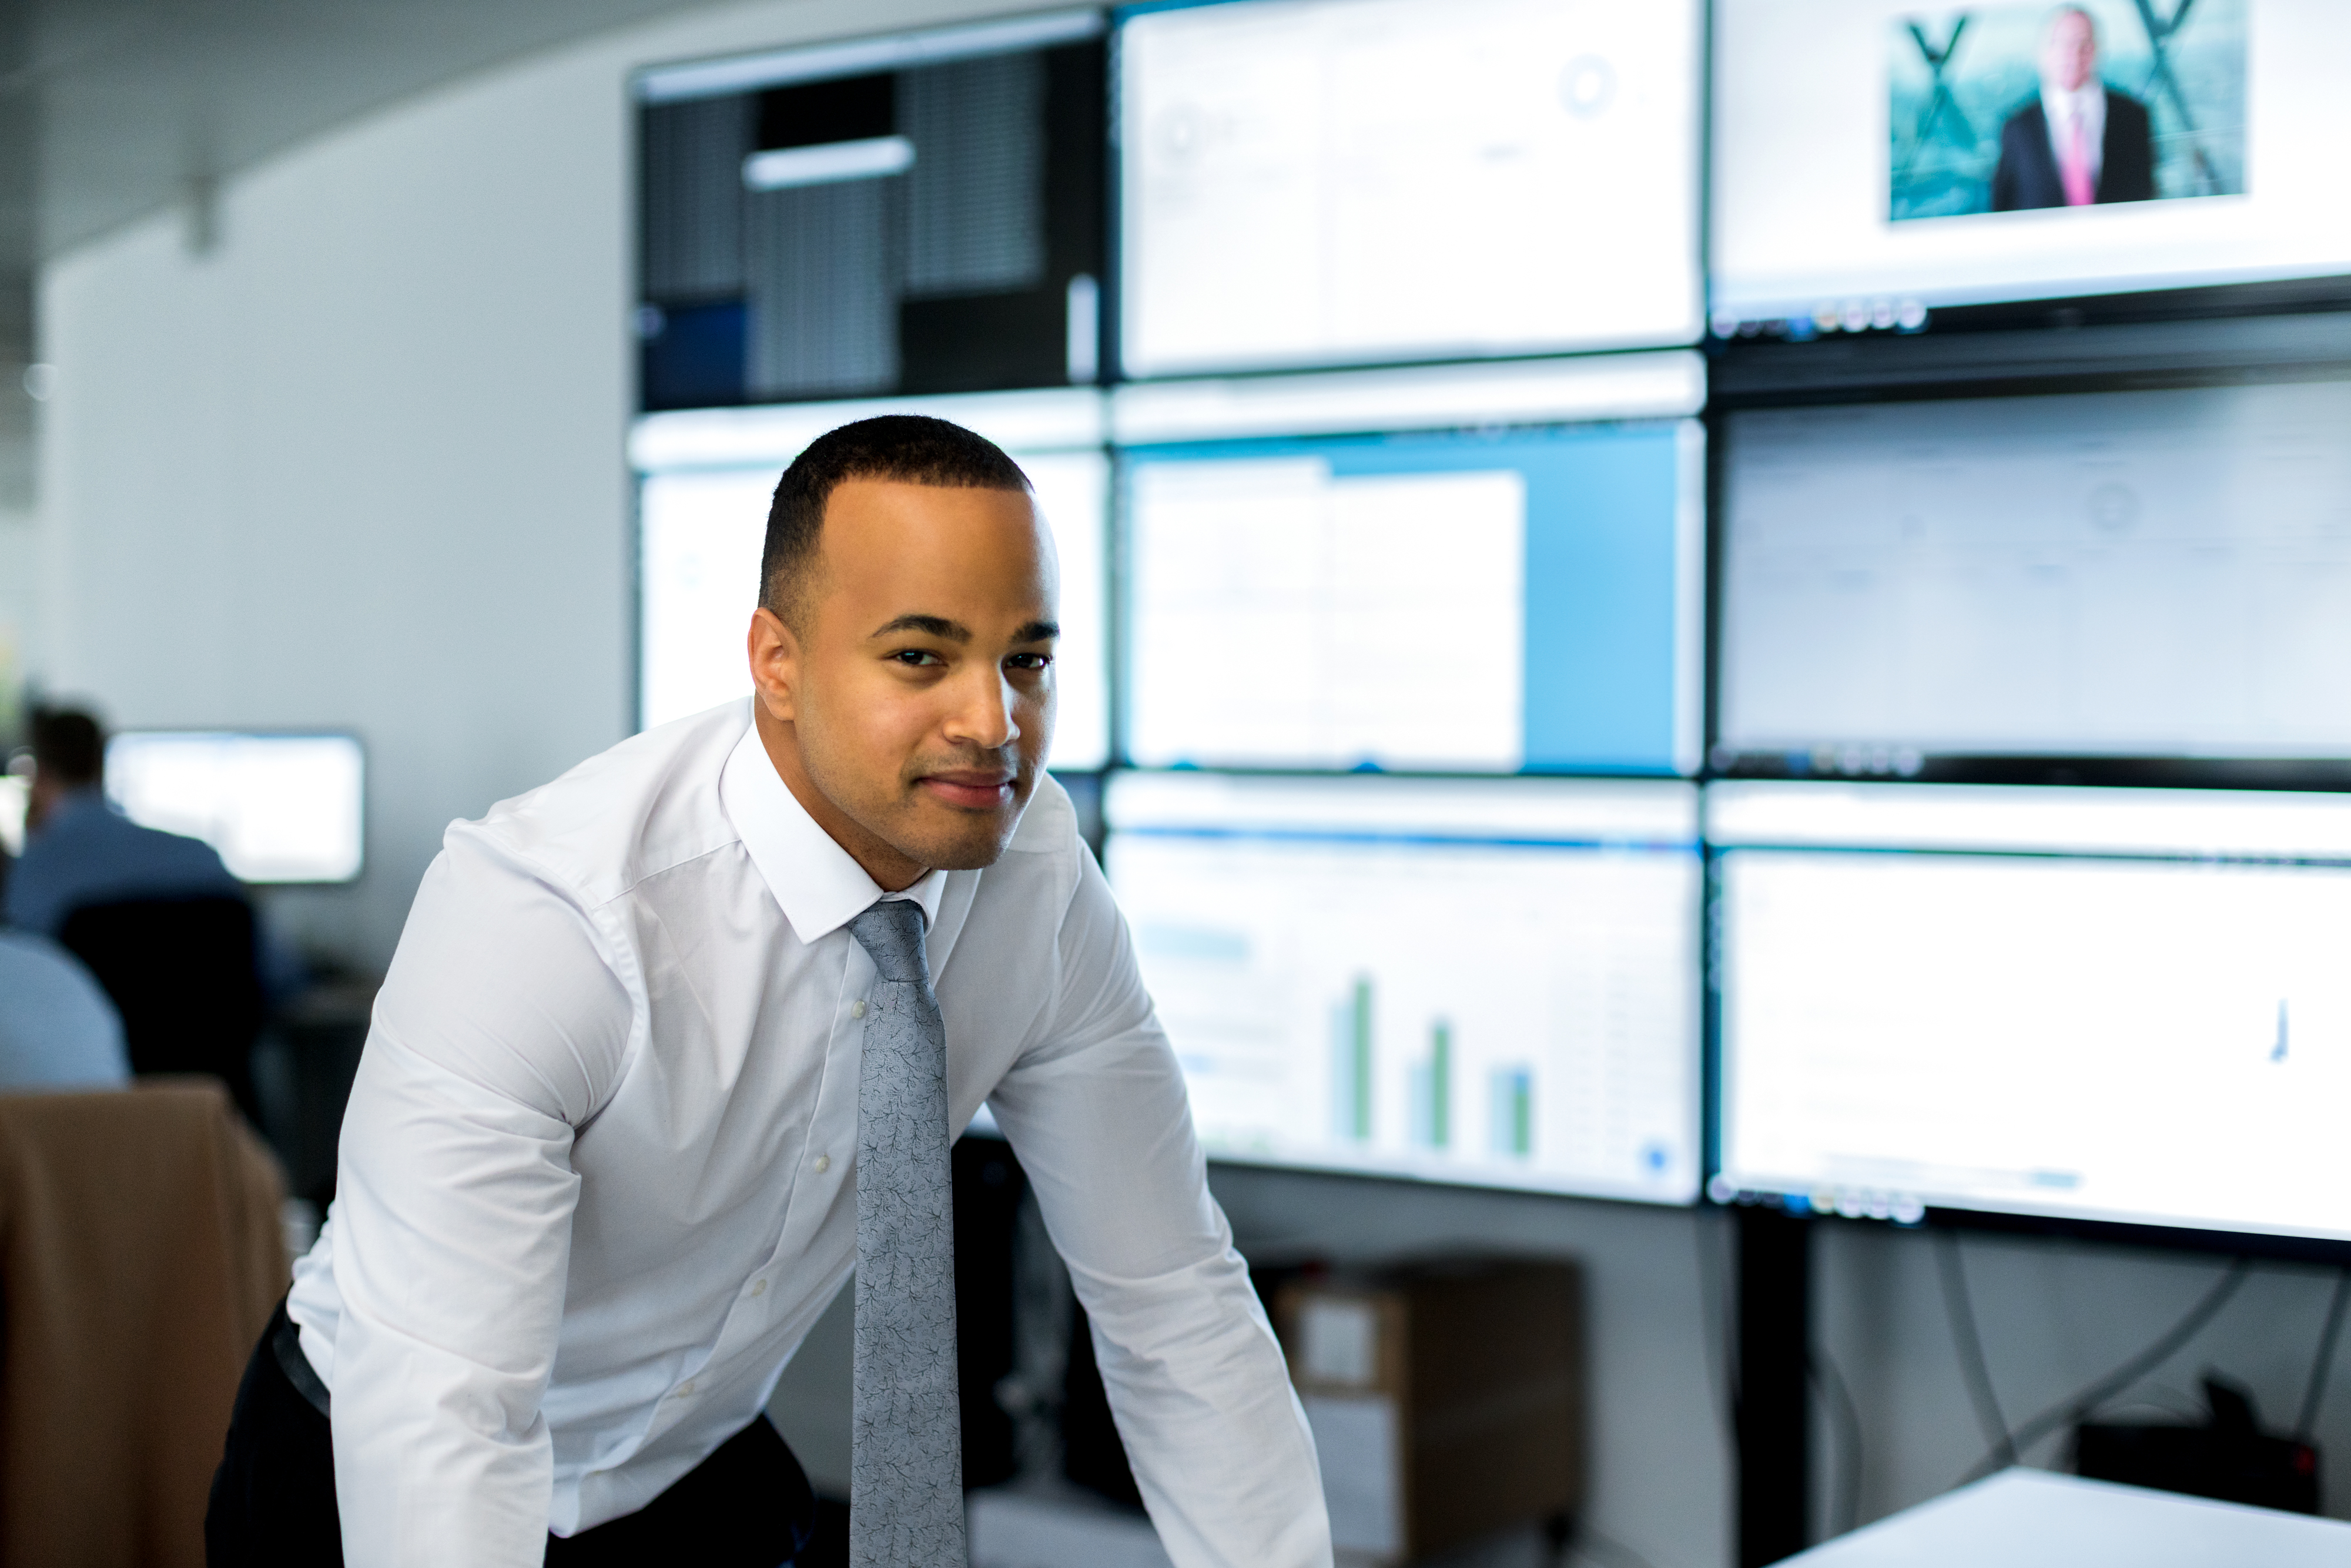 Um profissional da informação é retratado em frente de vários monitores.